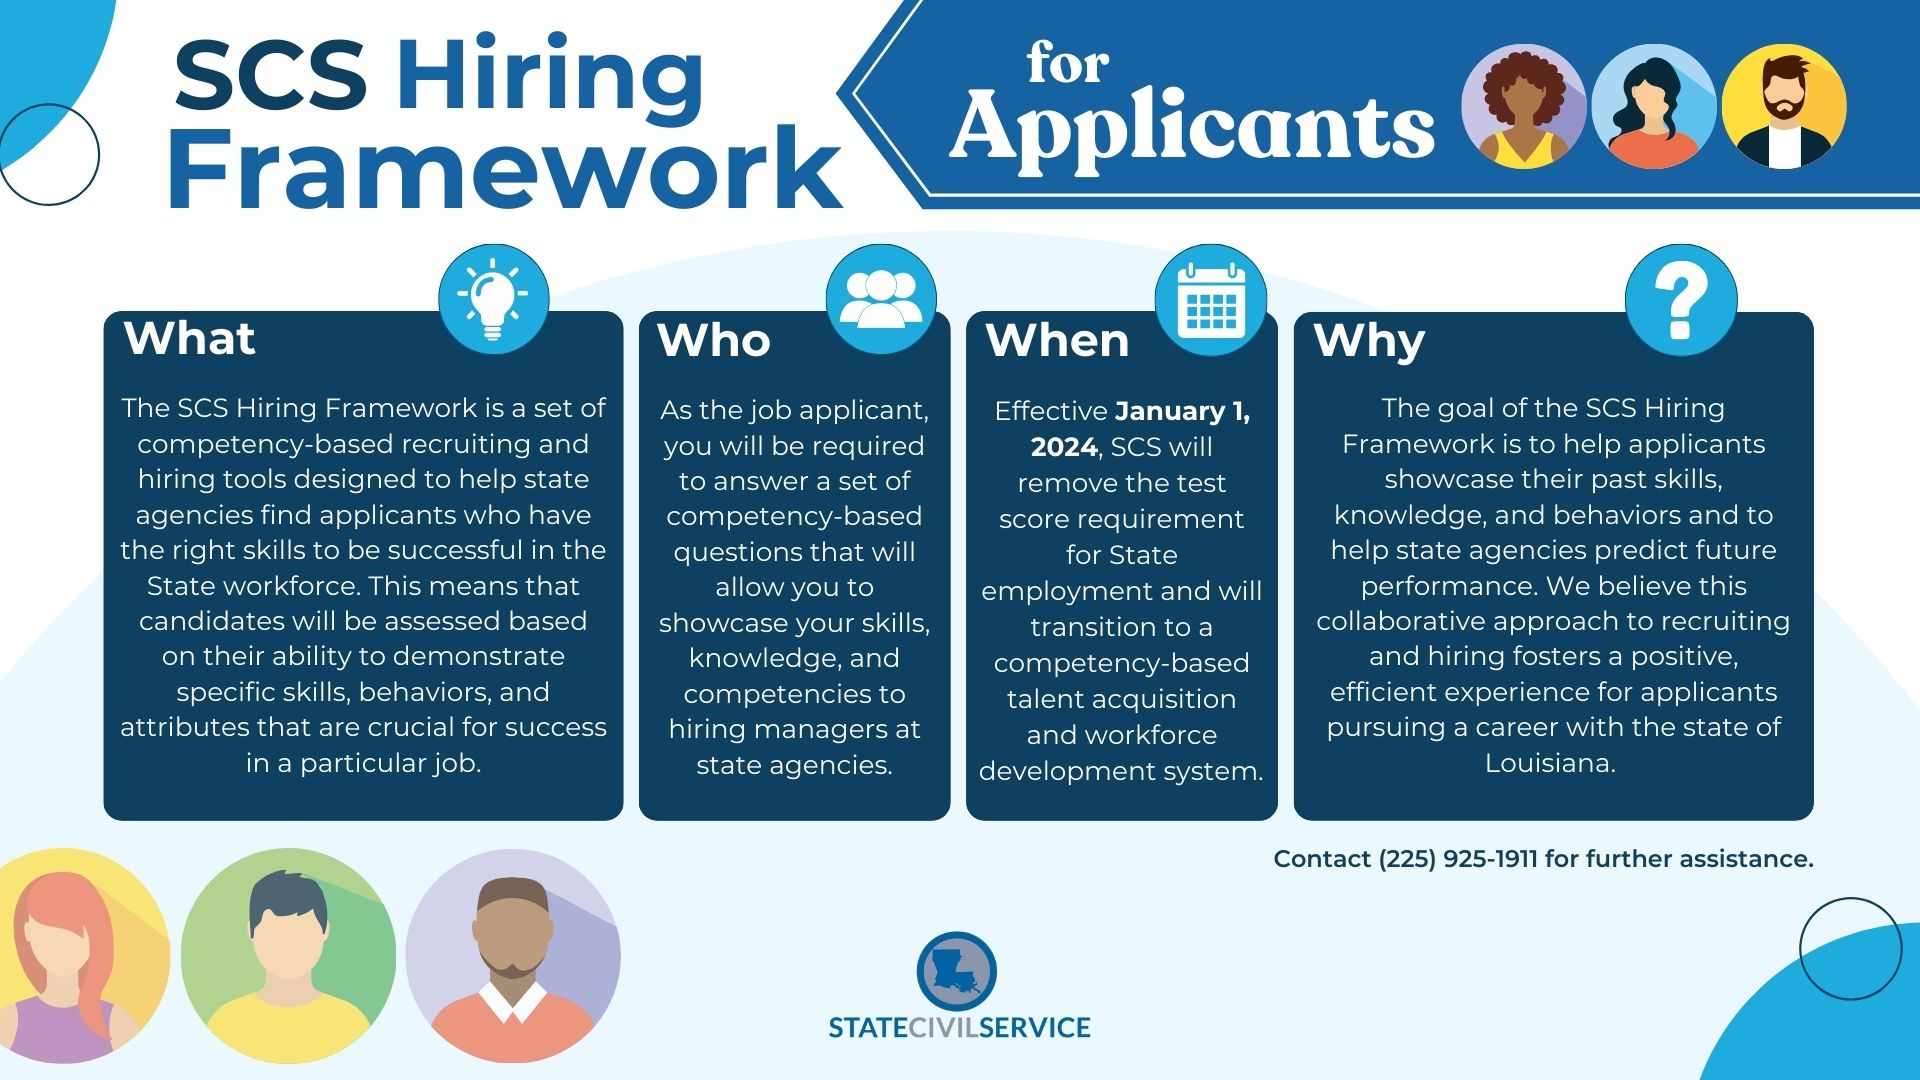 SCS Hiring Framework for Applicants